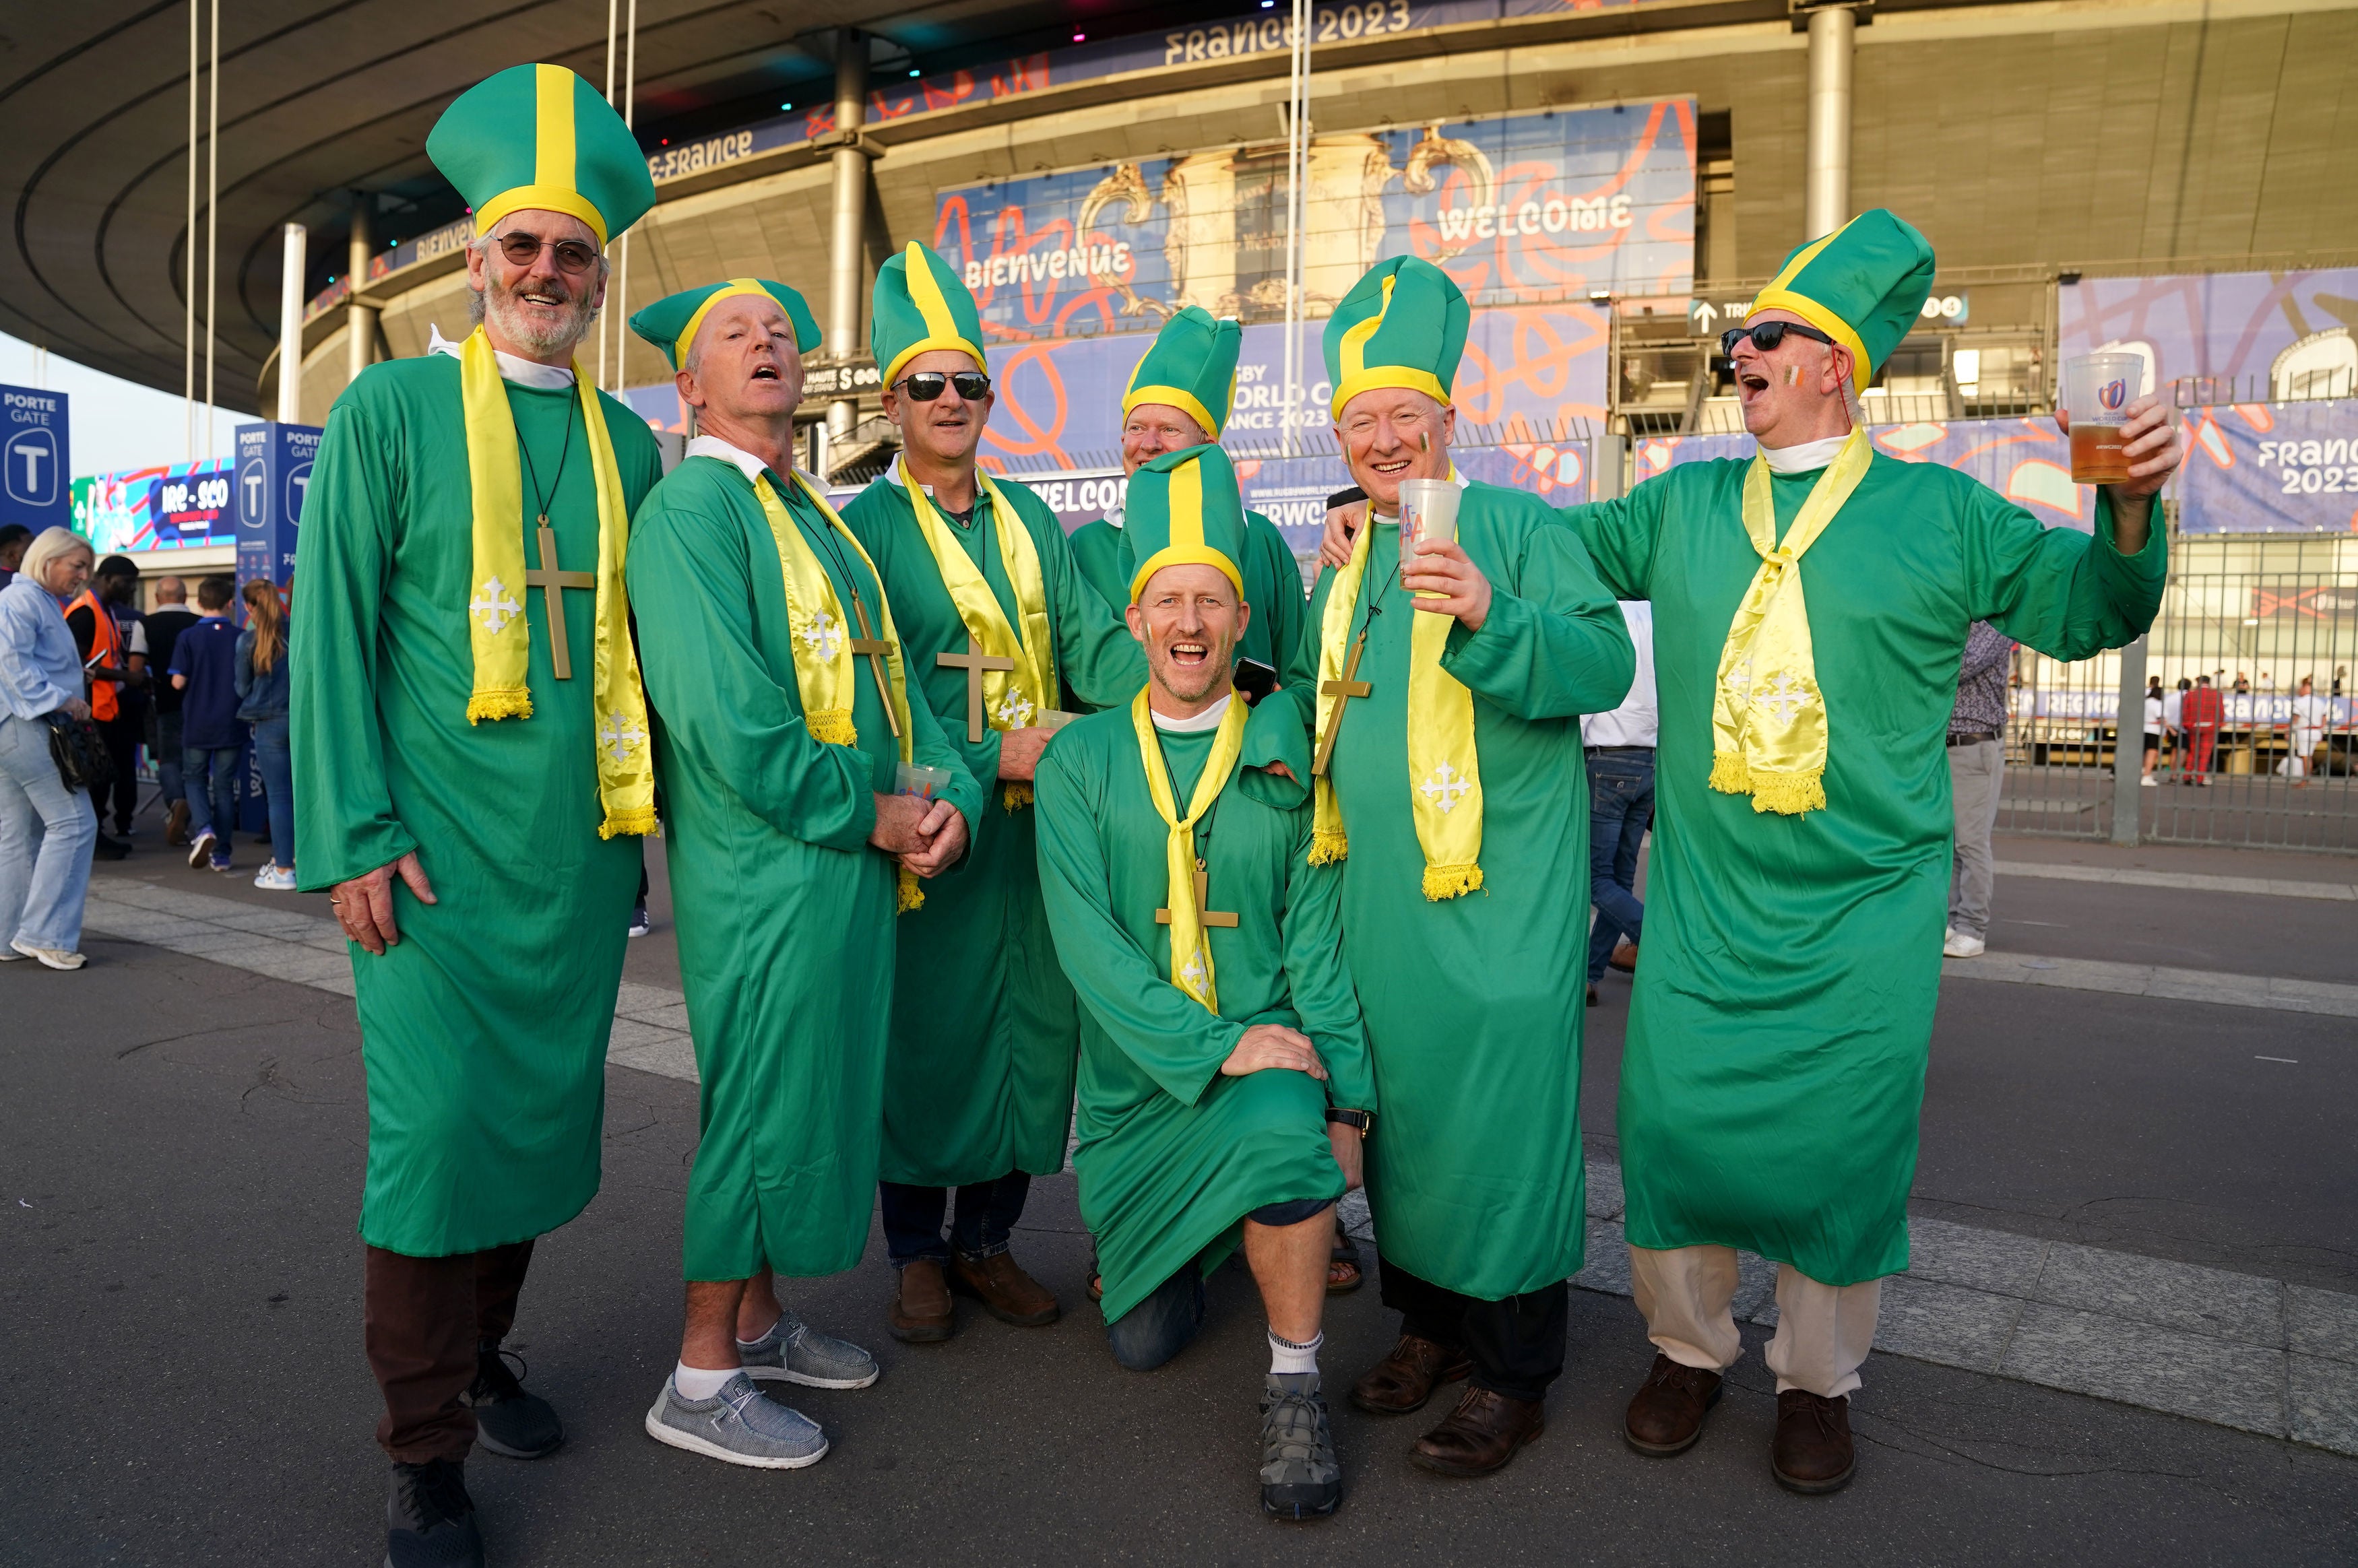 Ireland fans dressed as priests in Paris